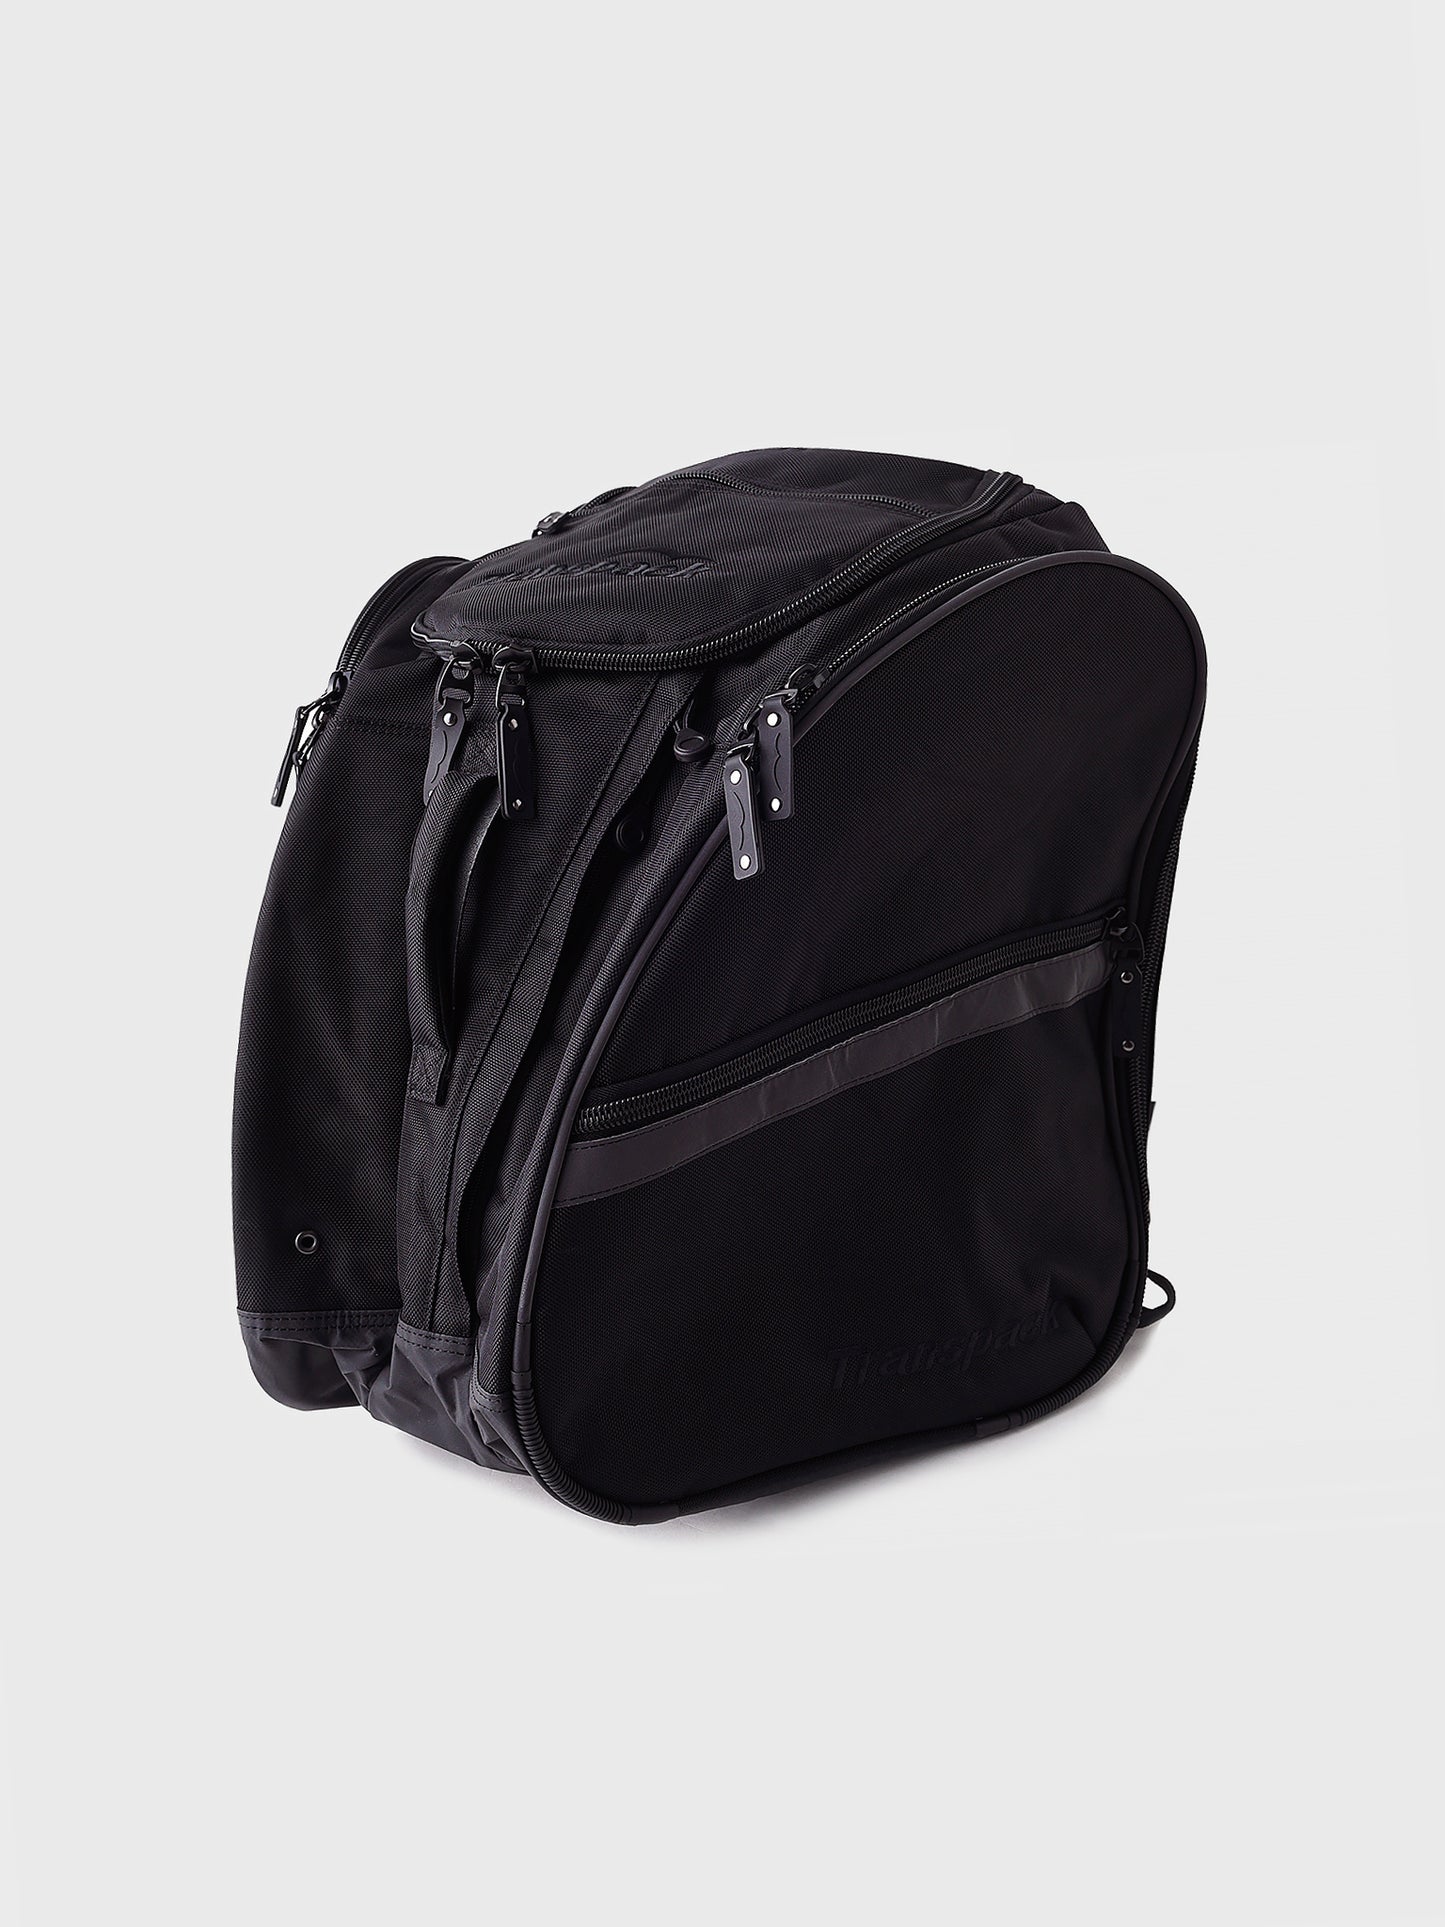 Transpack TRV Ballistic™ Pro Backpack